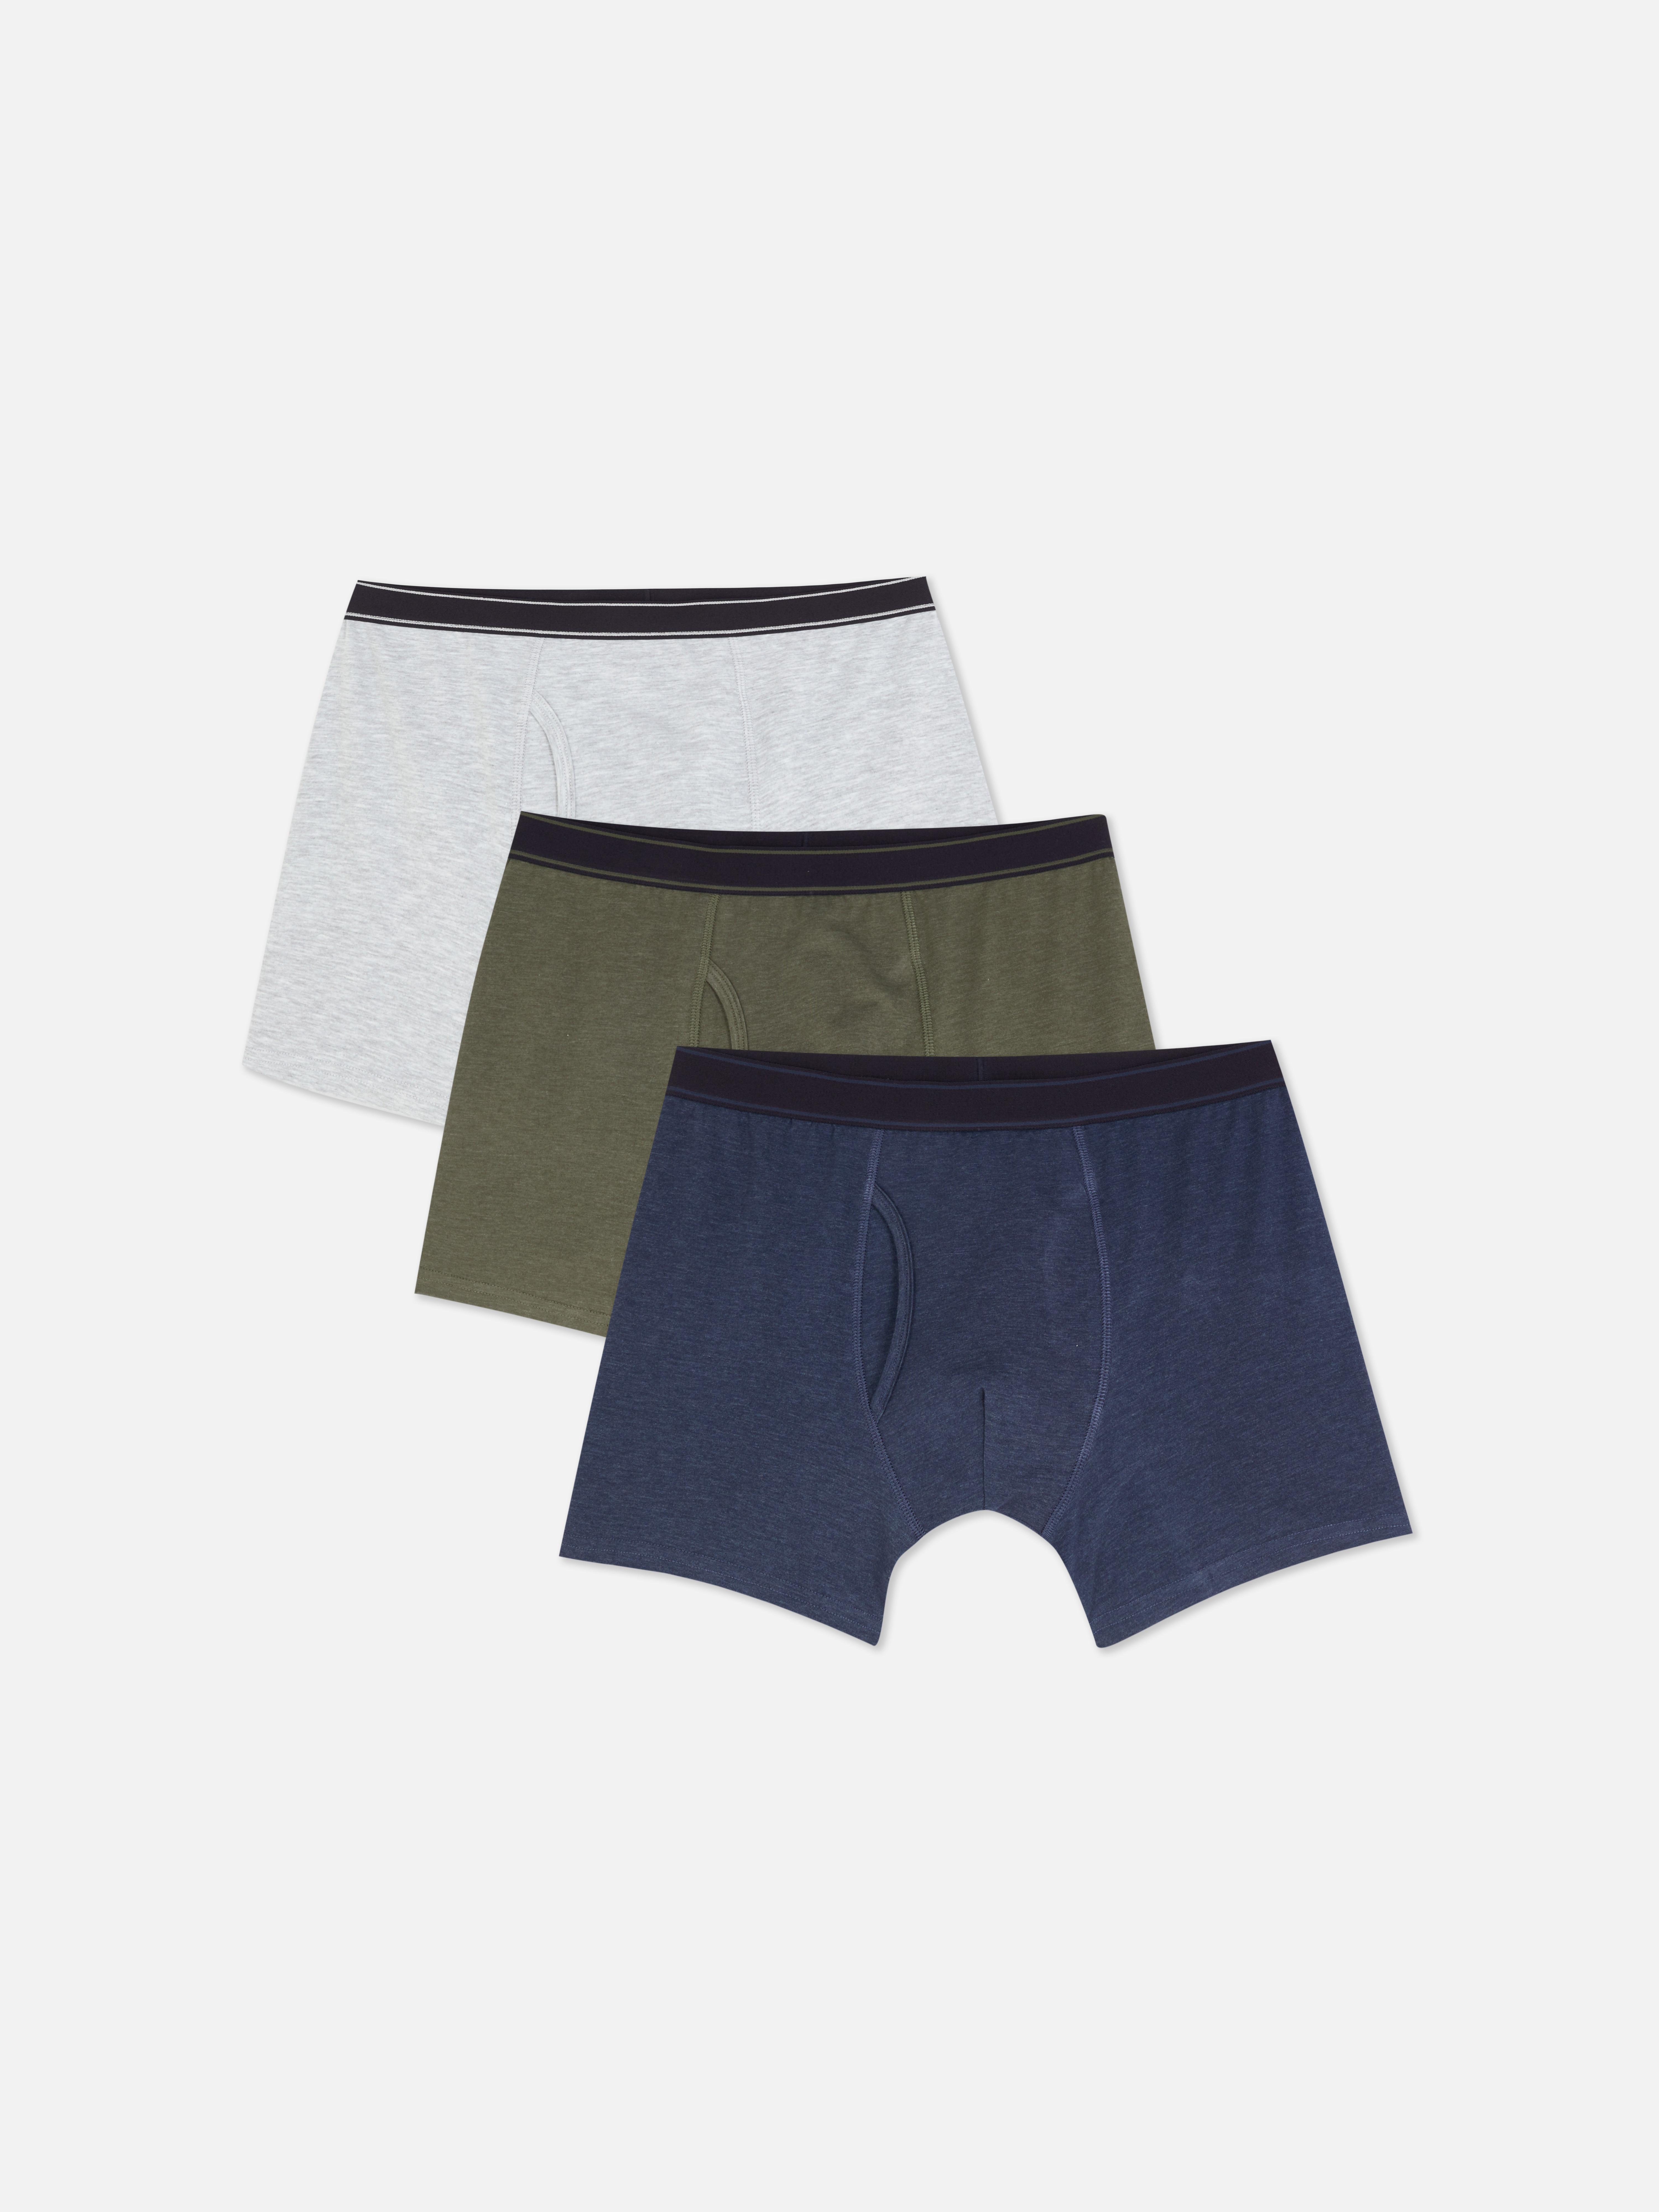 Primark Men Briefs Latest Underwear Collection - April 2023 